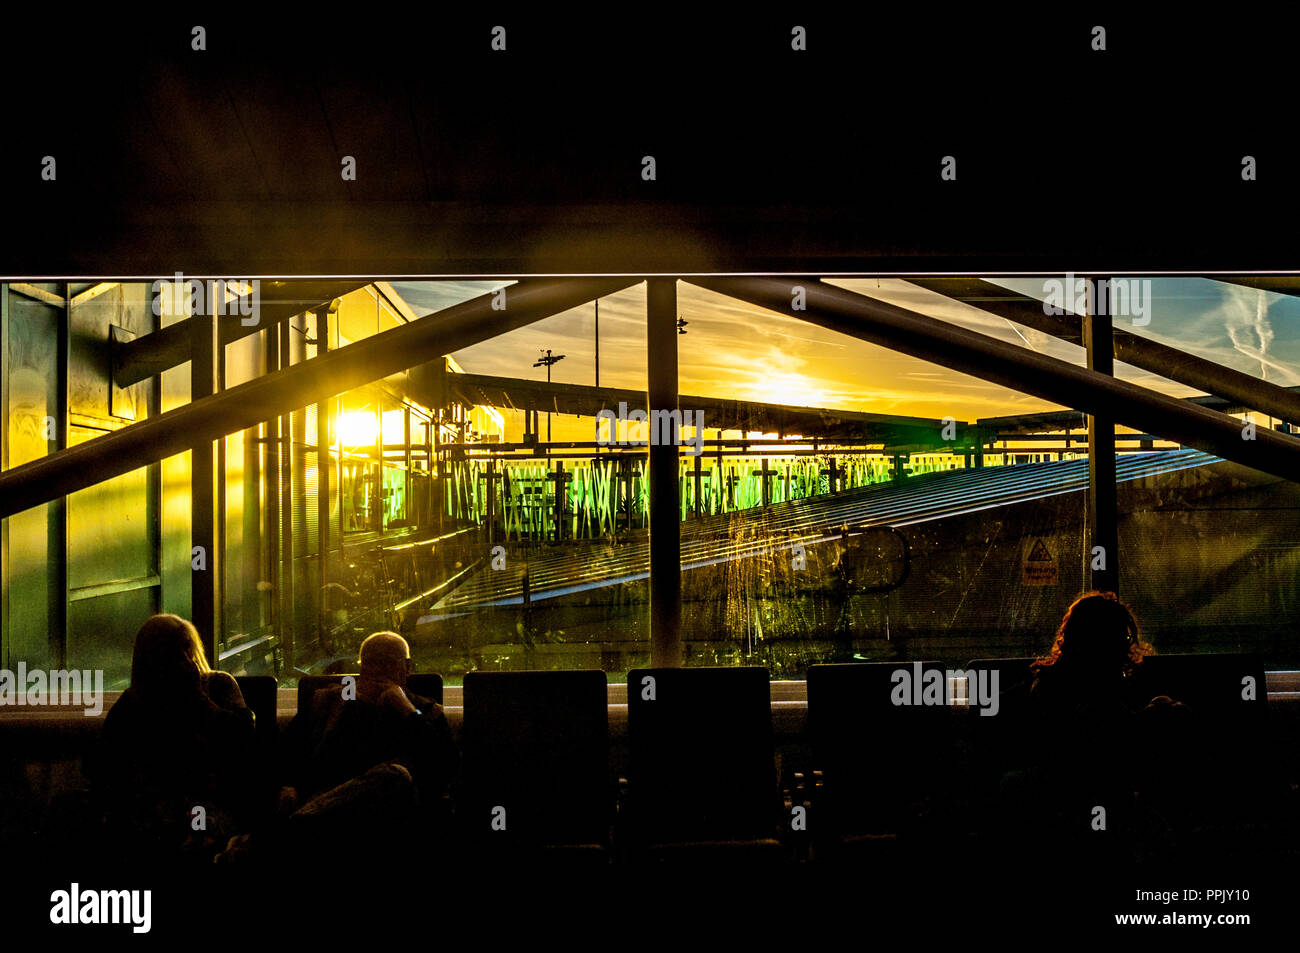 Amanecer en Bristol Airport, BRS, Englnd, Reino Unido. Ver mirando desde  terminal departures lounge Fotografía de stock - Alamy